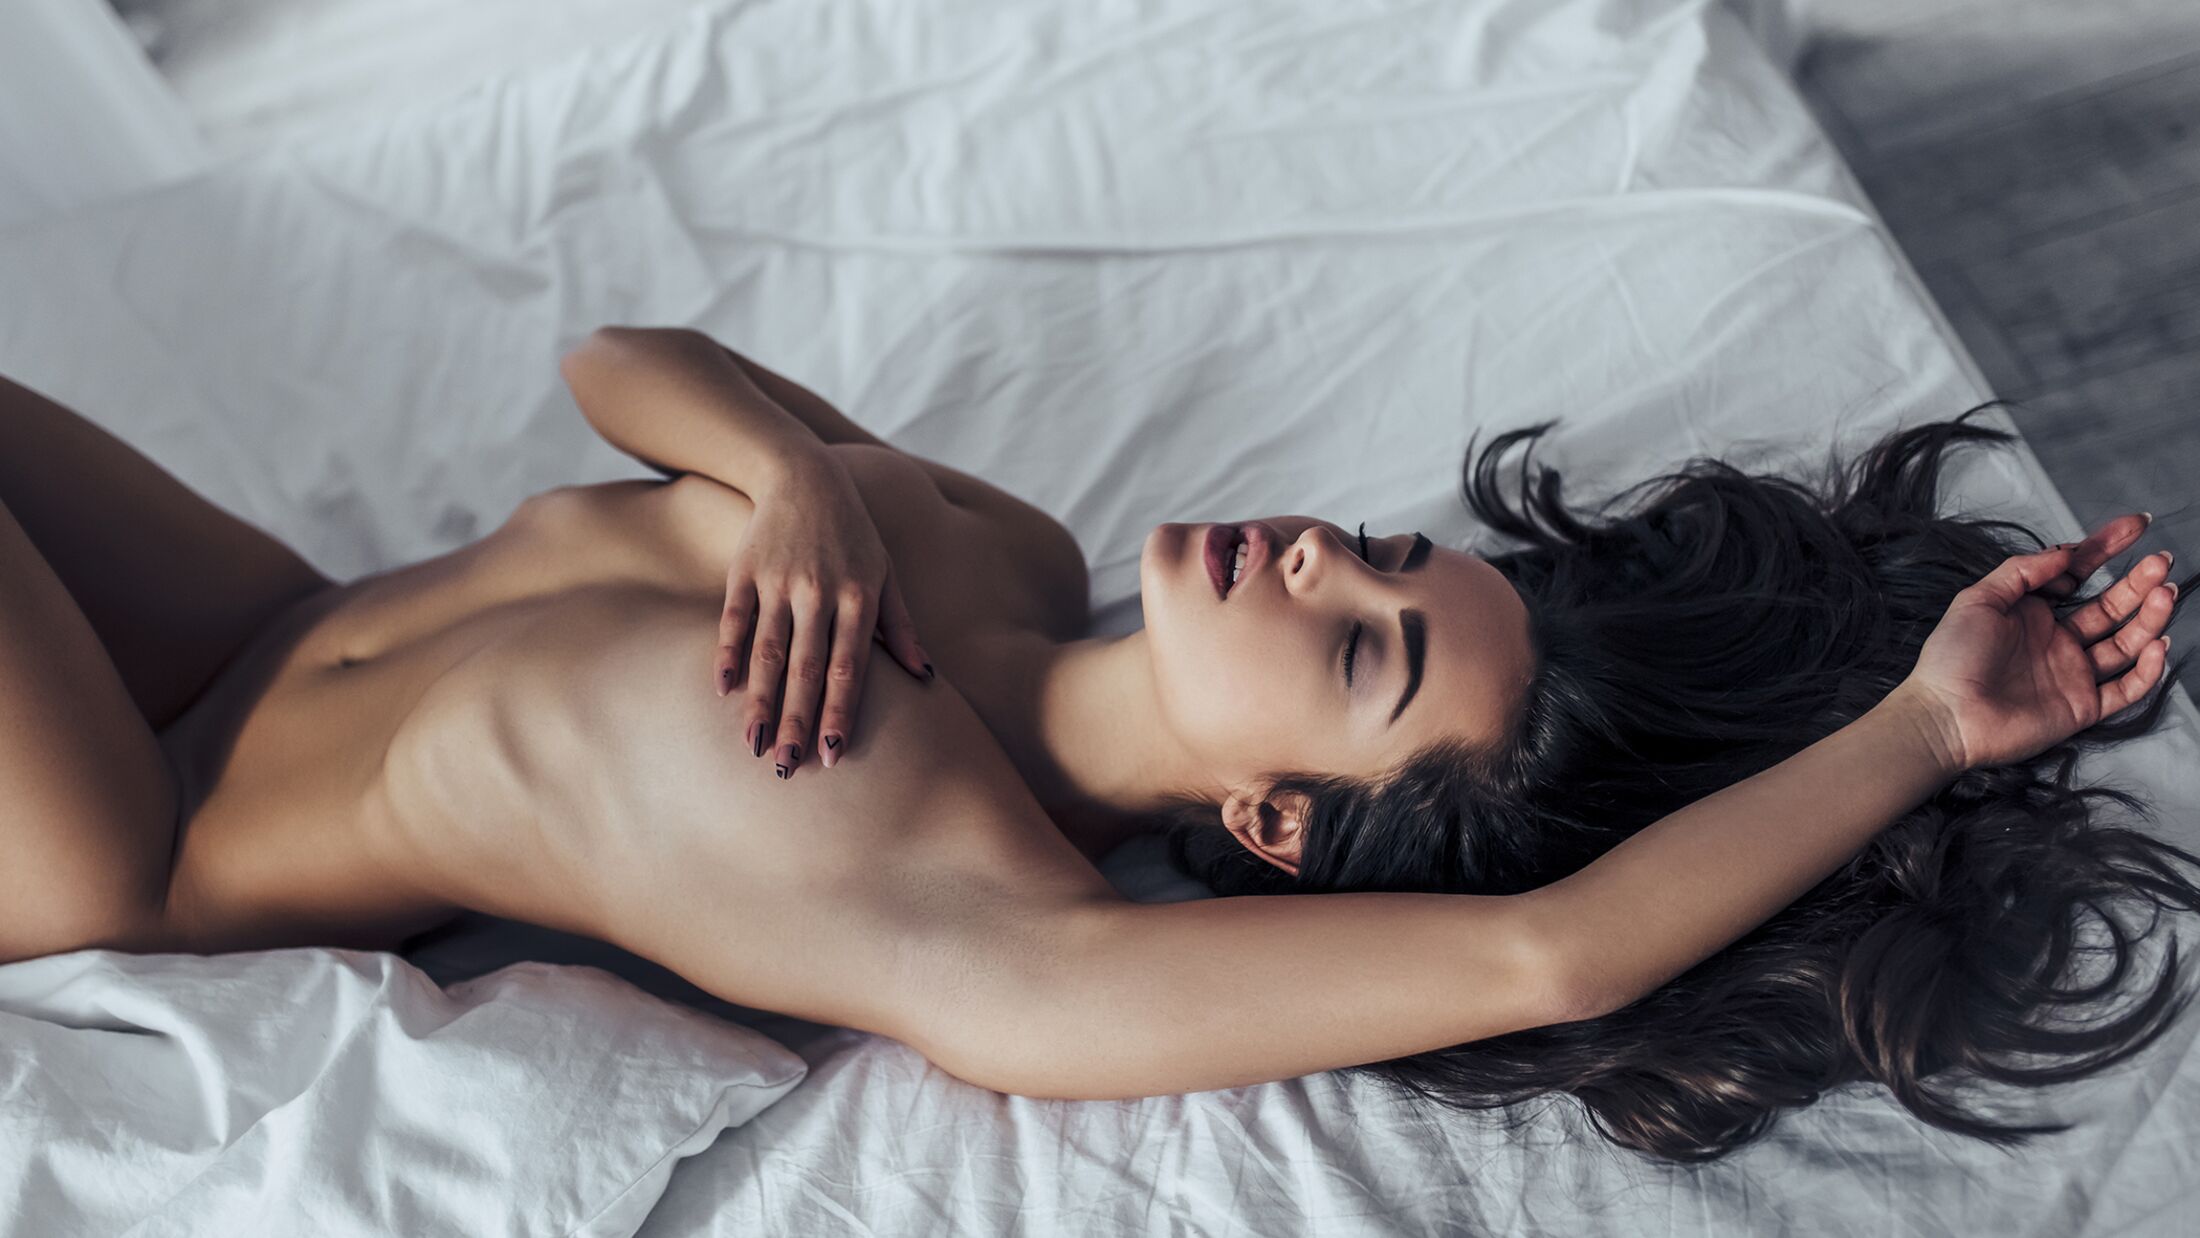 Sexfantasien 7 Top-Fantasien der Frauen MENS HEALTH Xxx Bild Hd